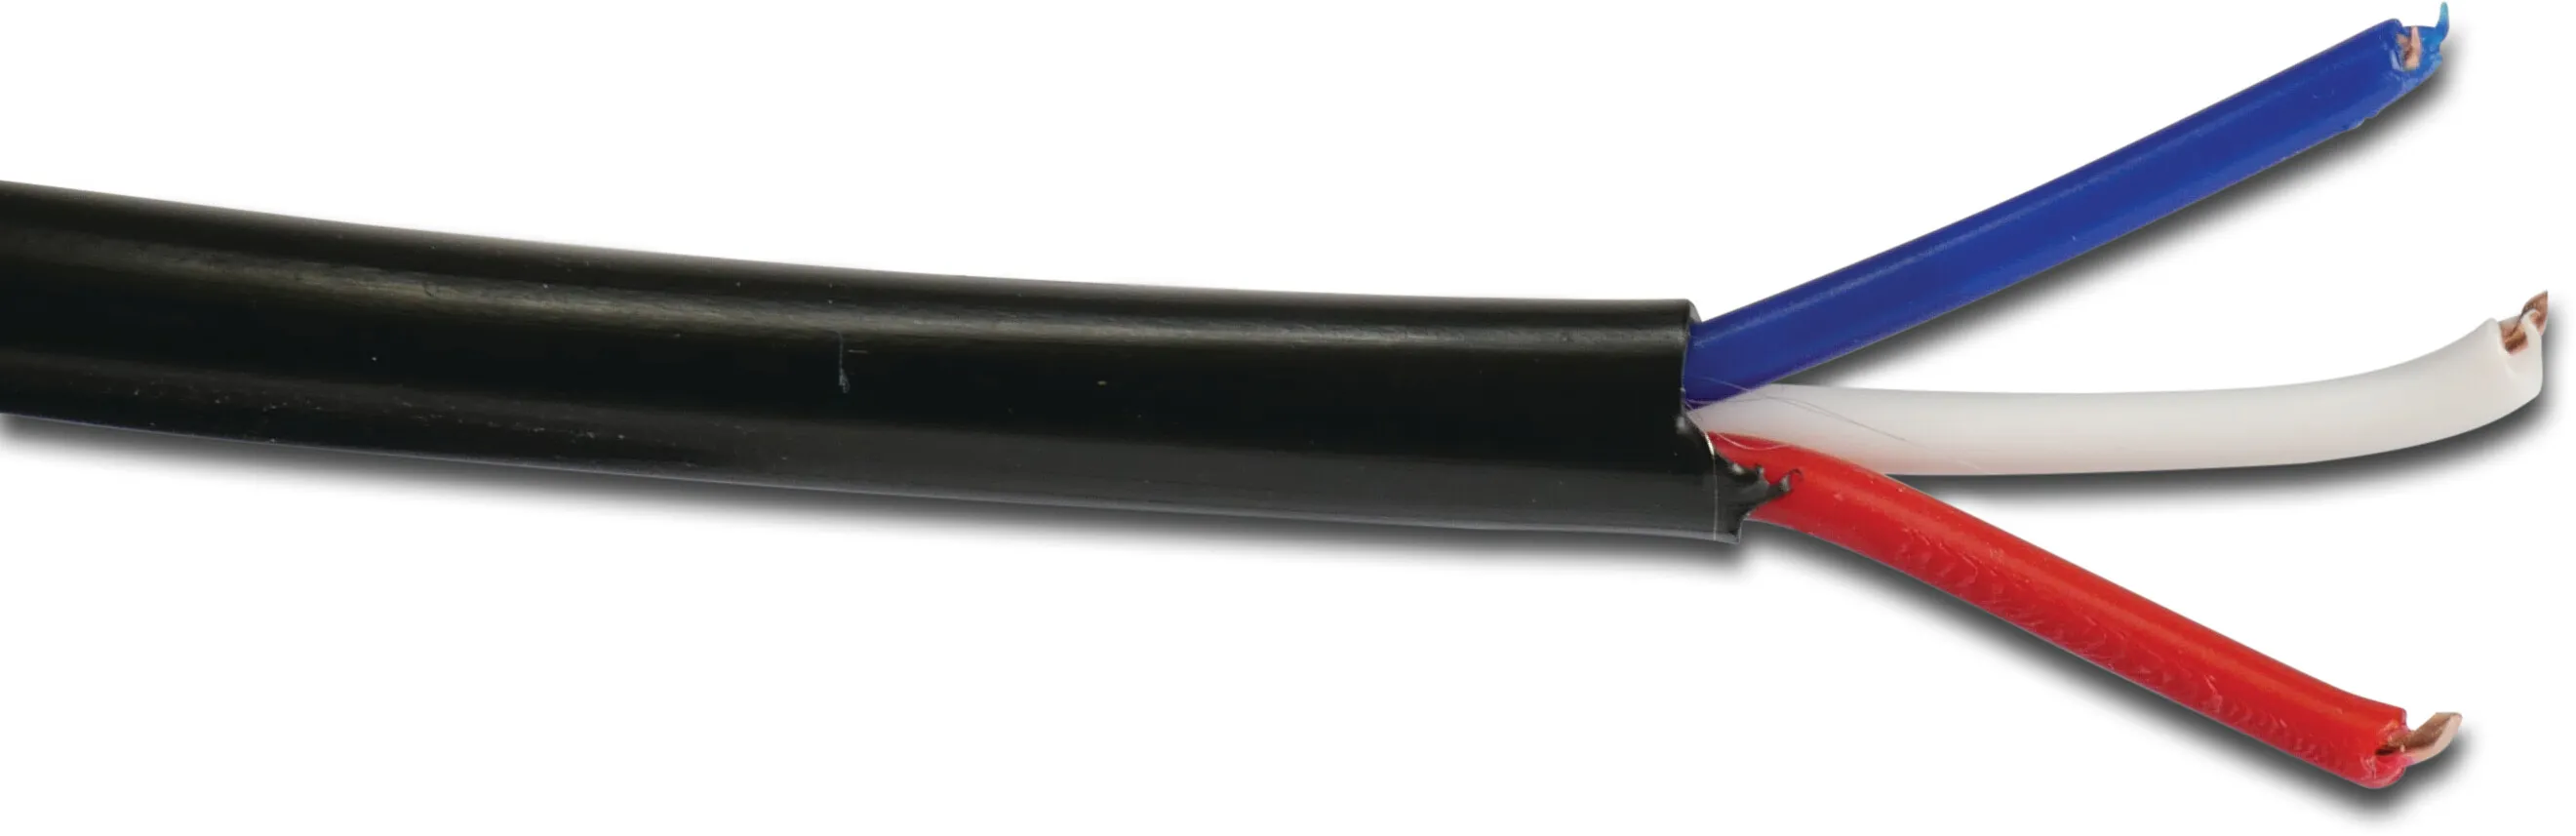 Elektrisk kabel kobber sort 50m type 3 x 0,75mm² 3 colour coded conductors